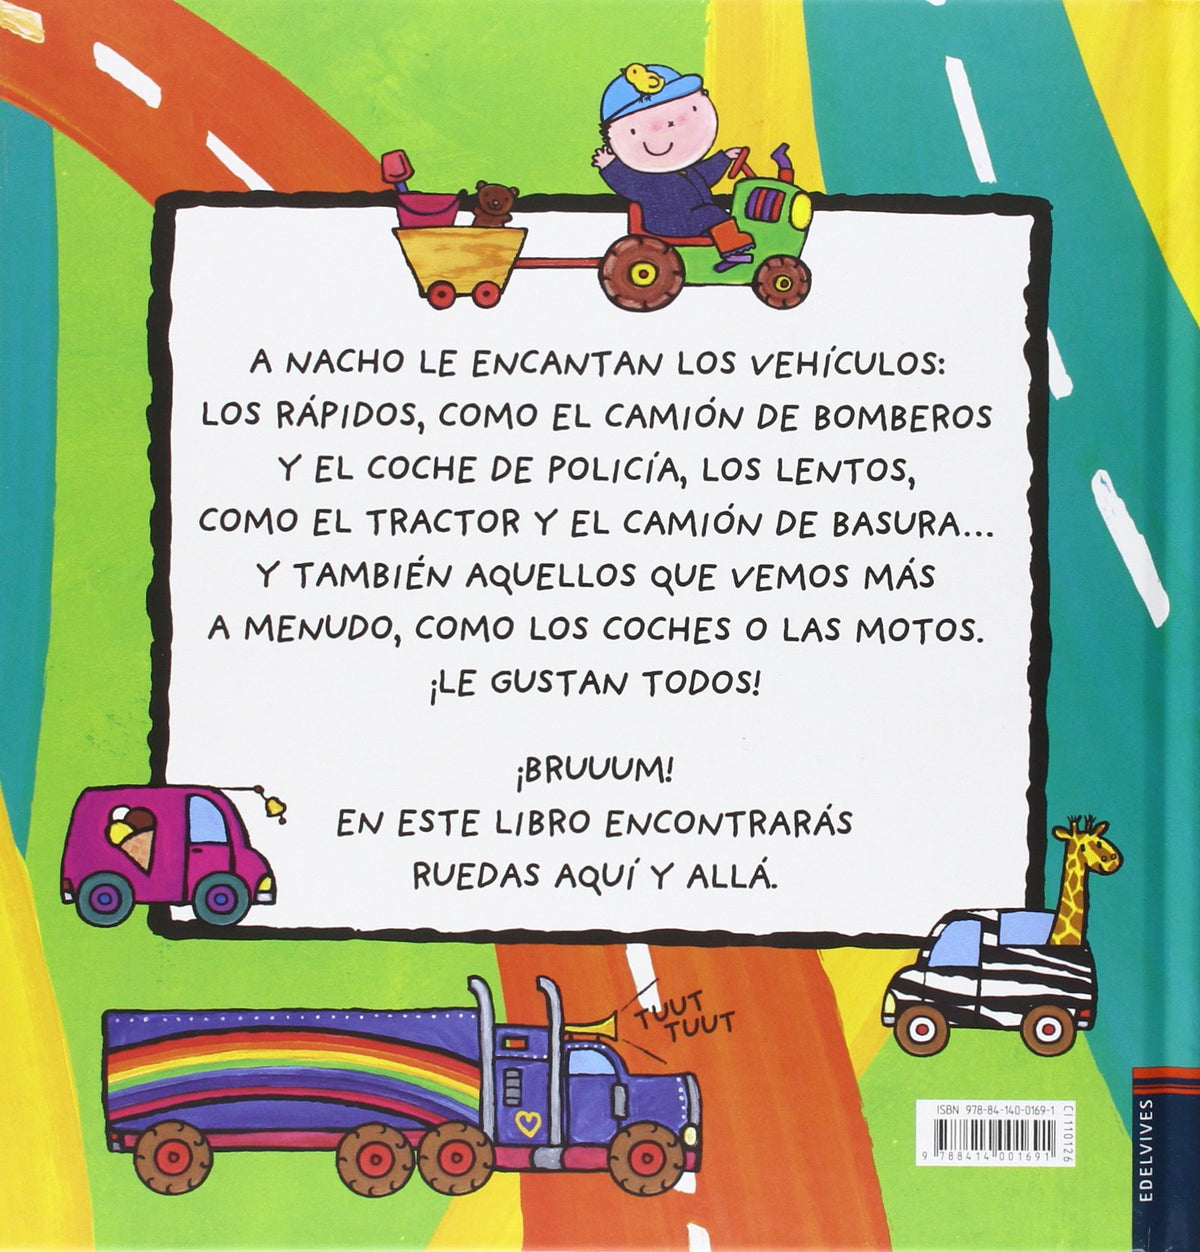 El Gran Libro De Los Vehículos De Nacho (Albumes Infantiles)